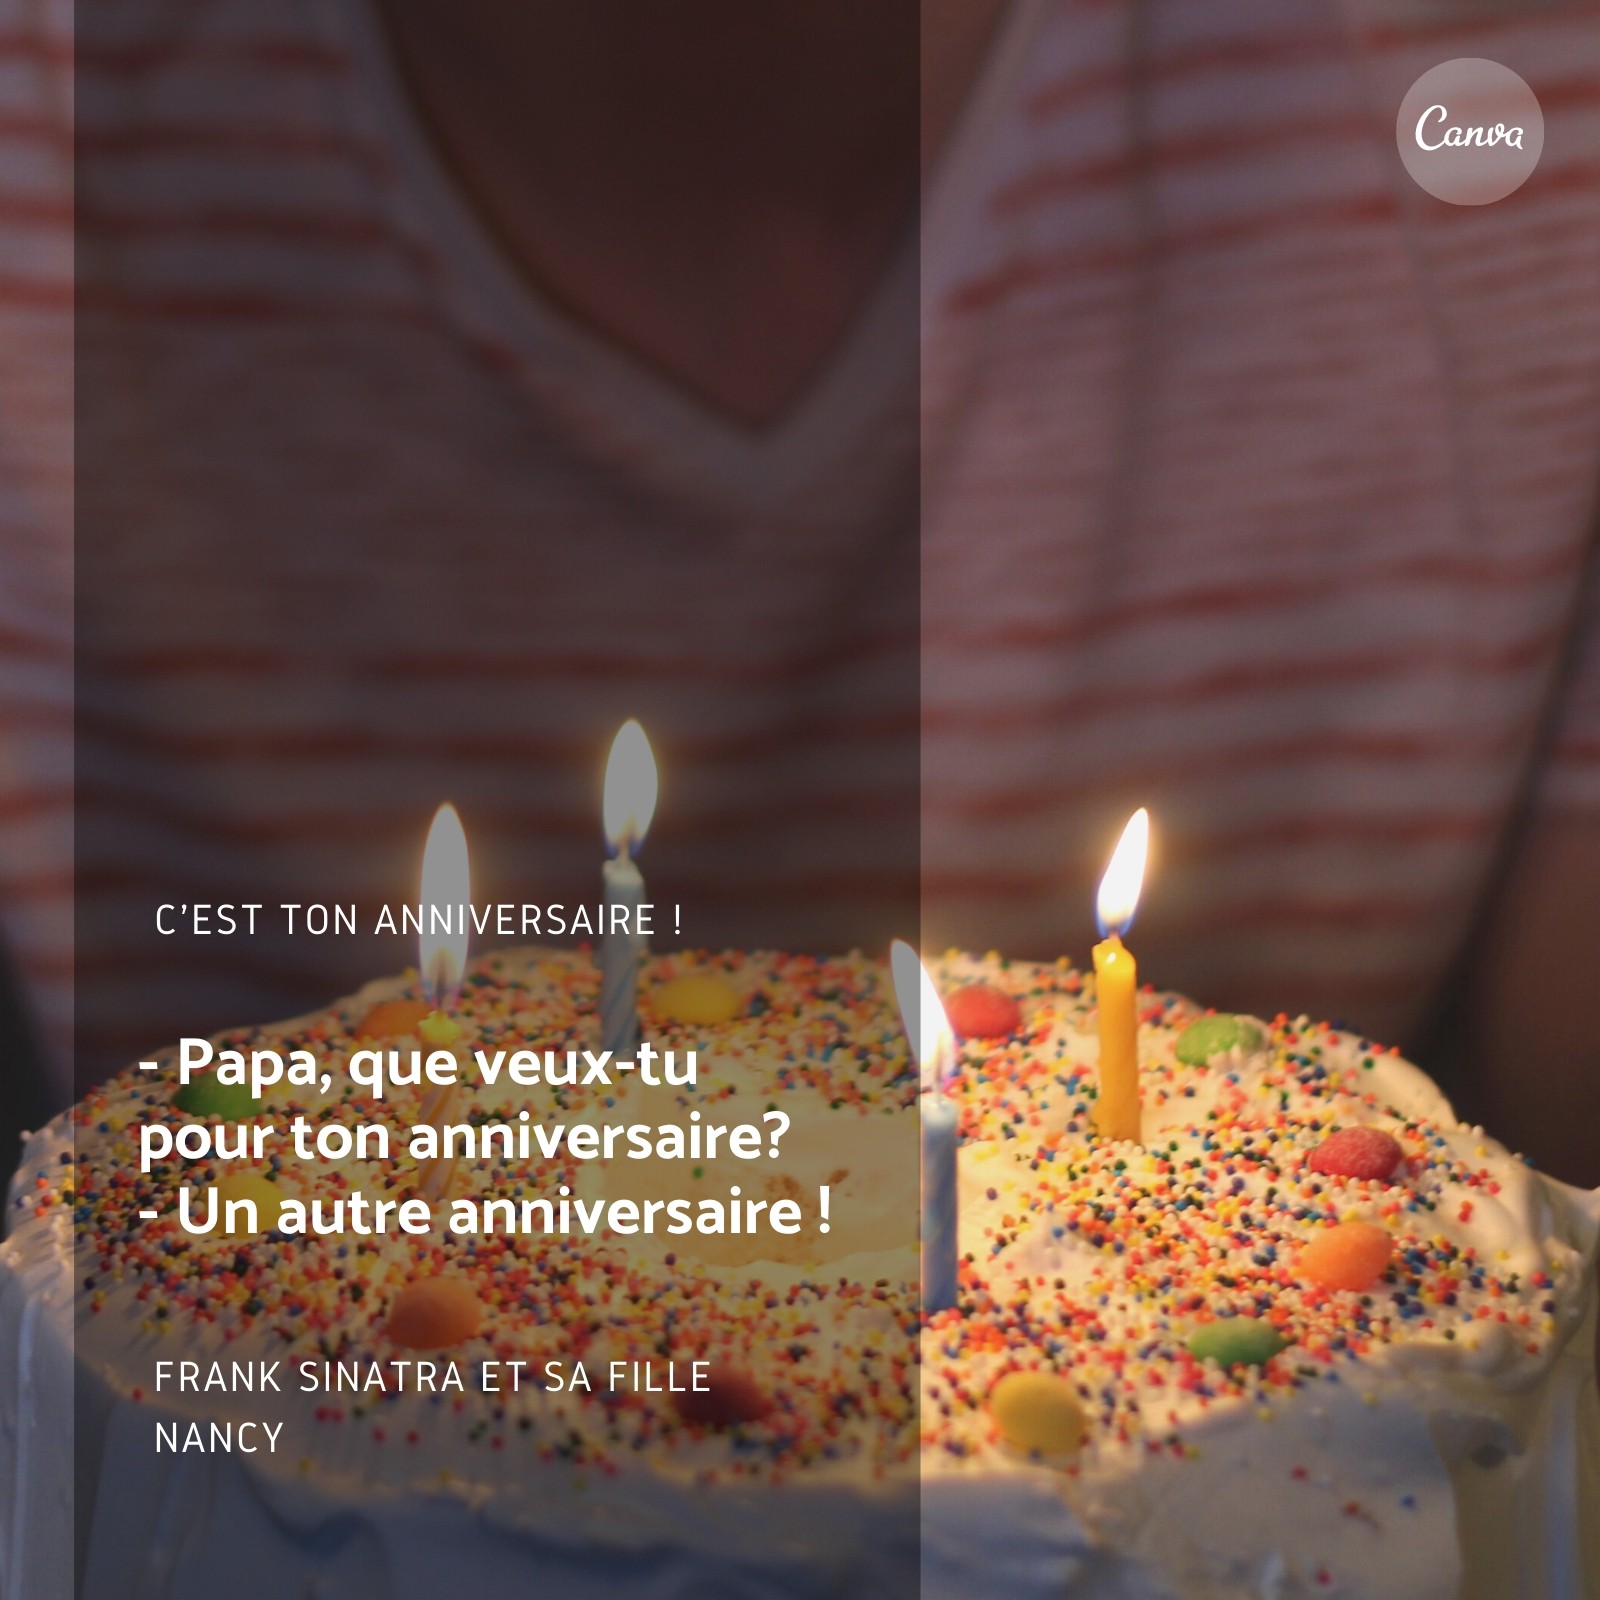 Gâteau de joyeux anniversaire avec cadeau de bougies' Autocollant